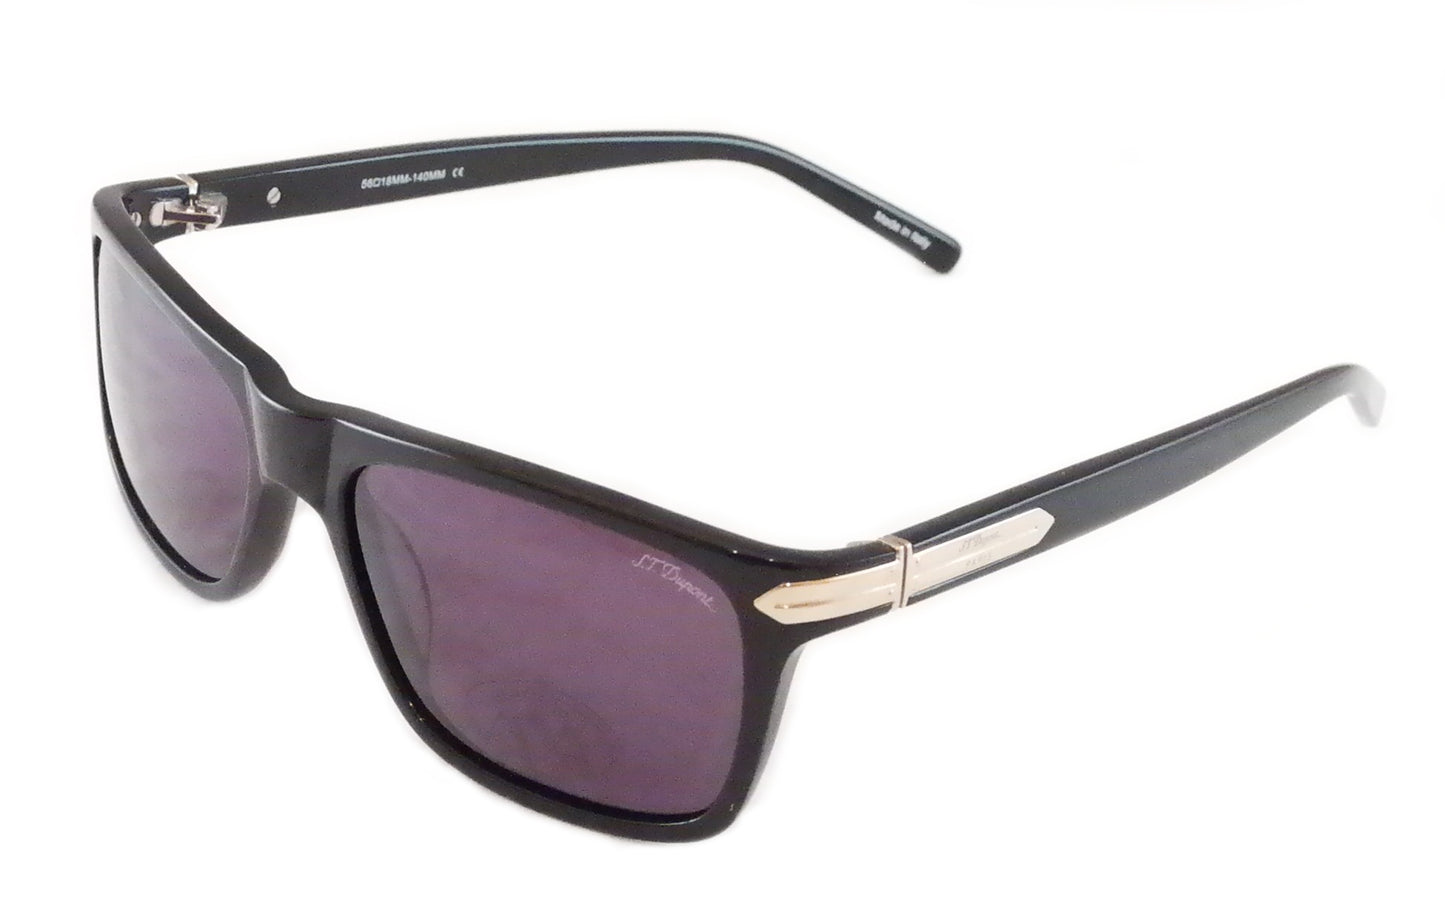 S.T. Dupont Sunglasses ST008 Plastic Italy 100% UV Category 3 Lenses 56-18-140 - Frame Bay